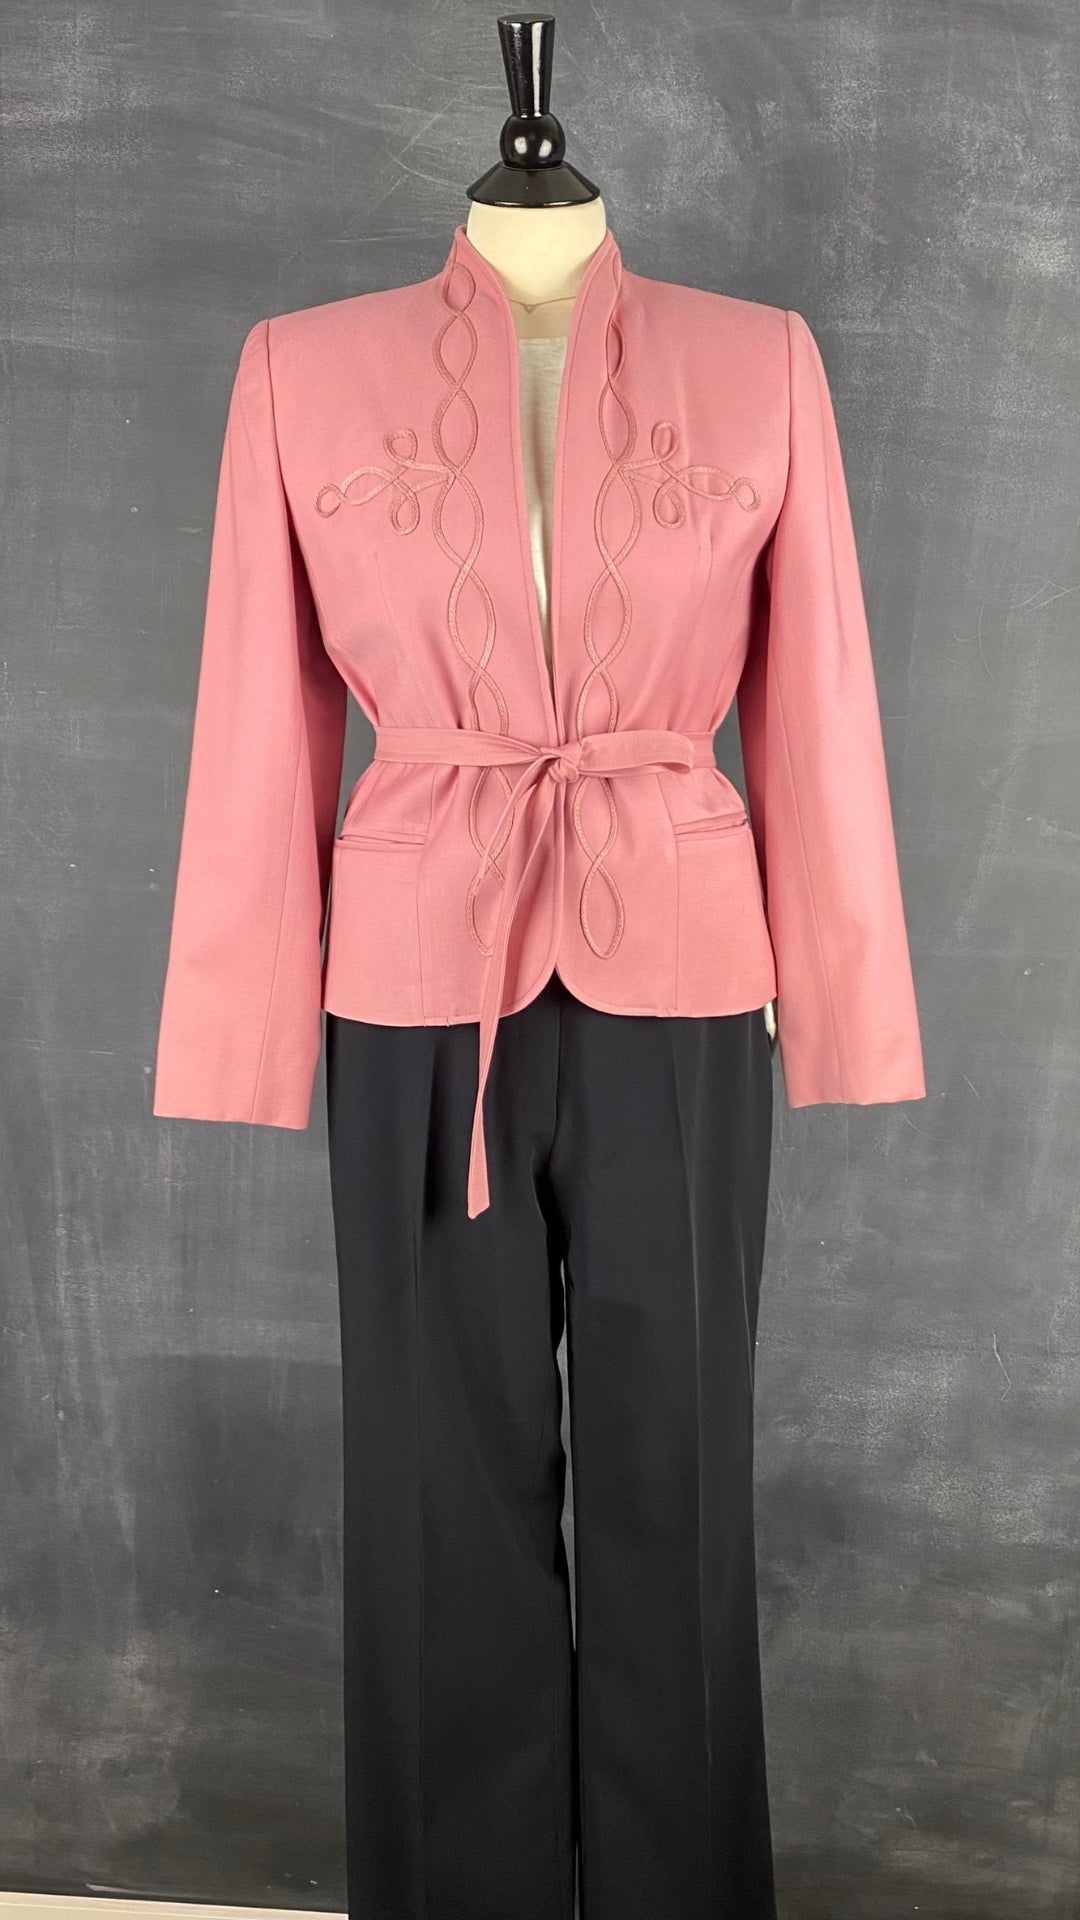 Pantalon chic à jambe large Atelier Gardeur, taille 8. Vue de l'agencement avec le blazer vintage rose en laine.